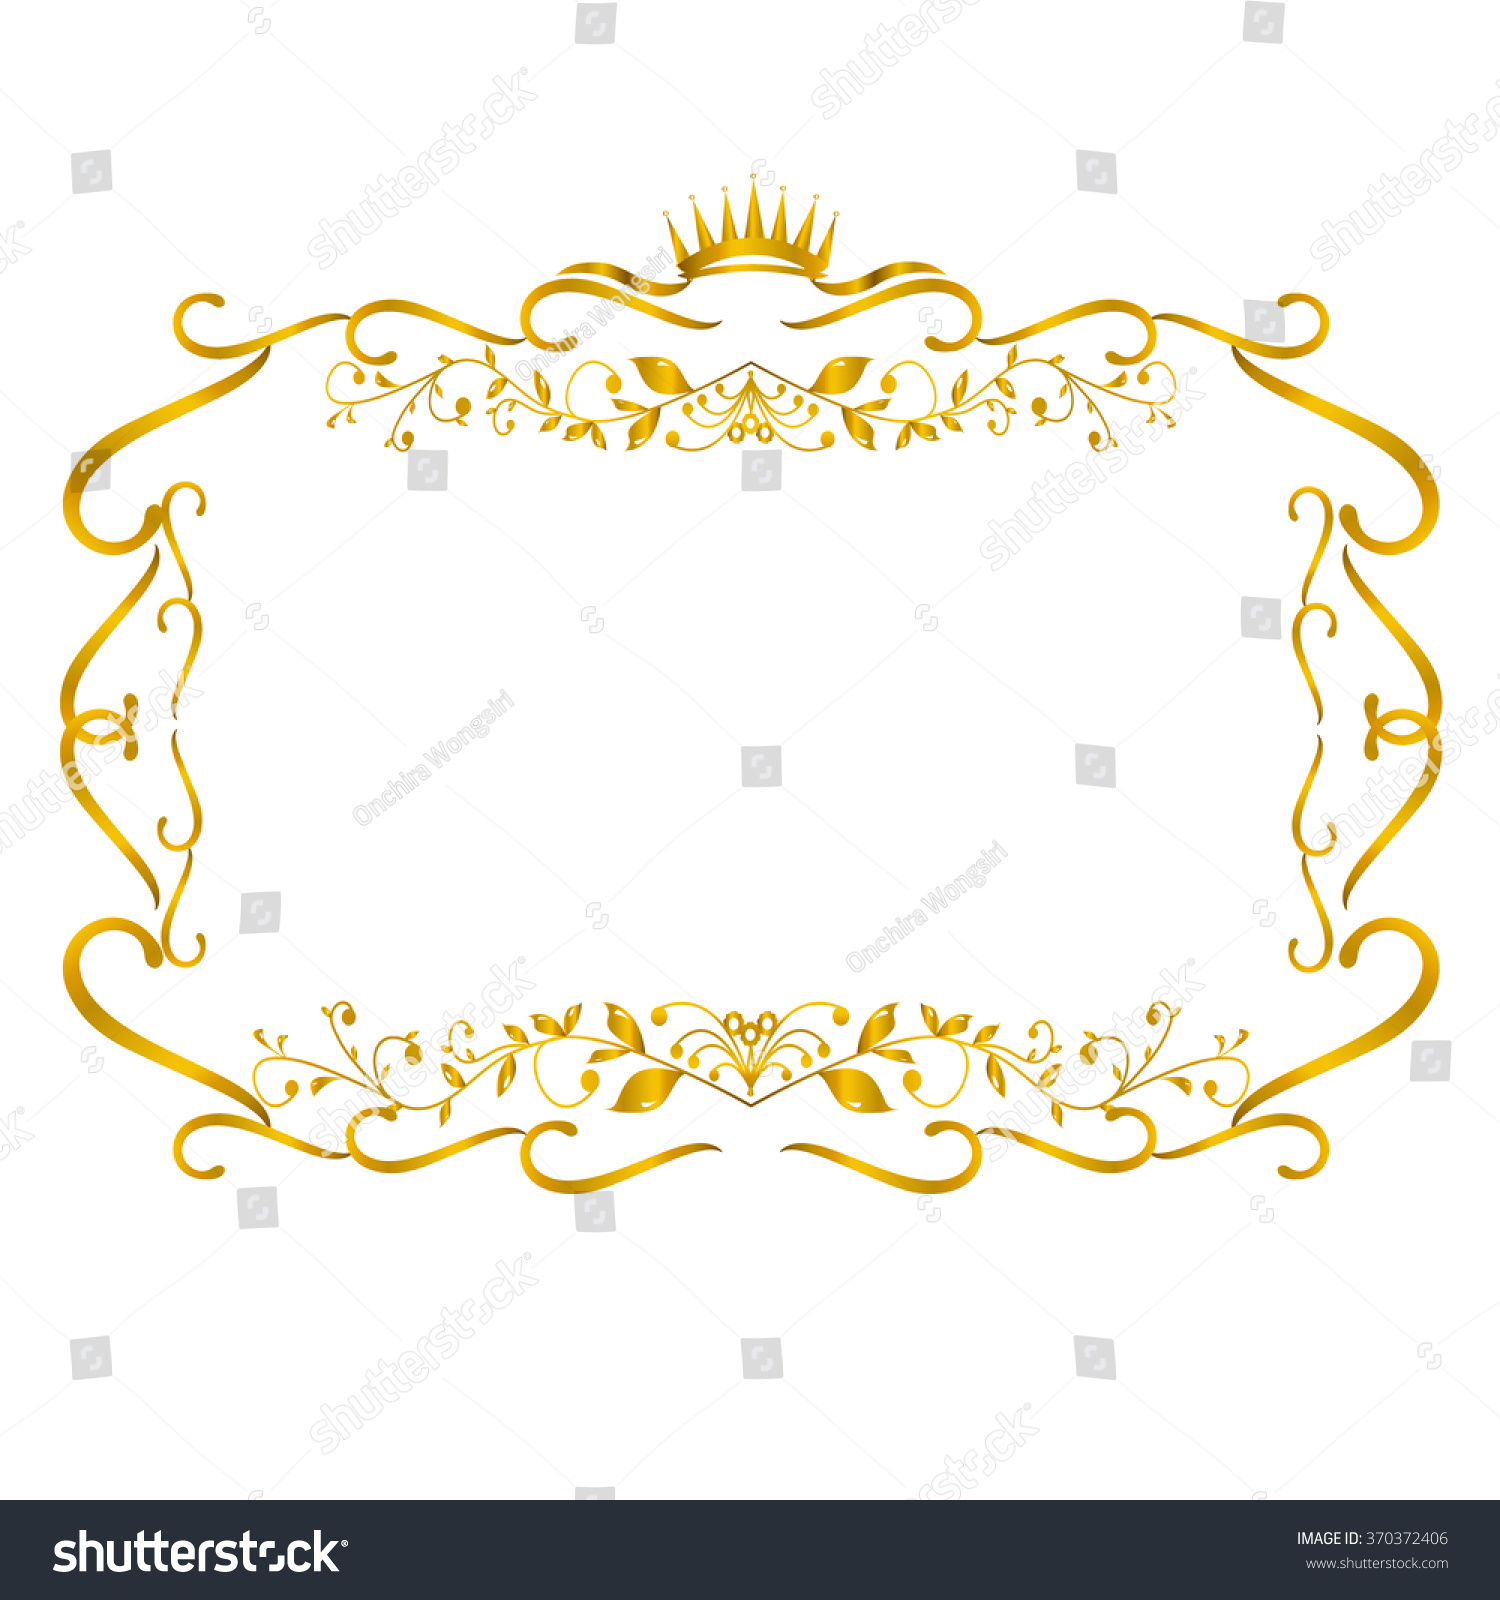 Download Golden Frame Border Crown Vector Illustration Stock Vector ...